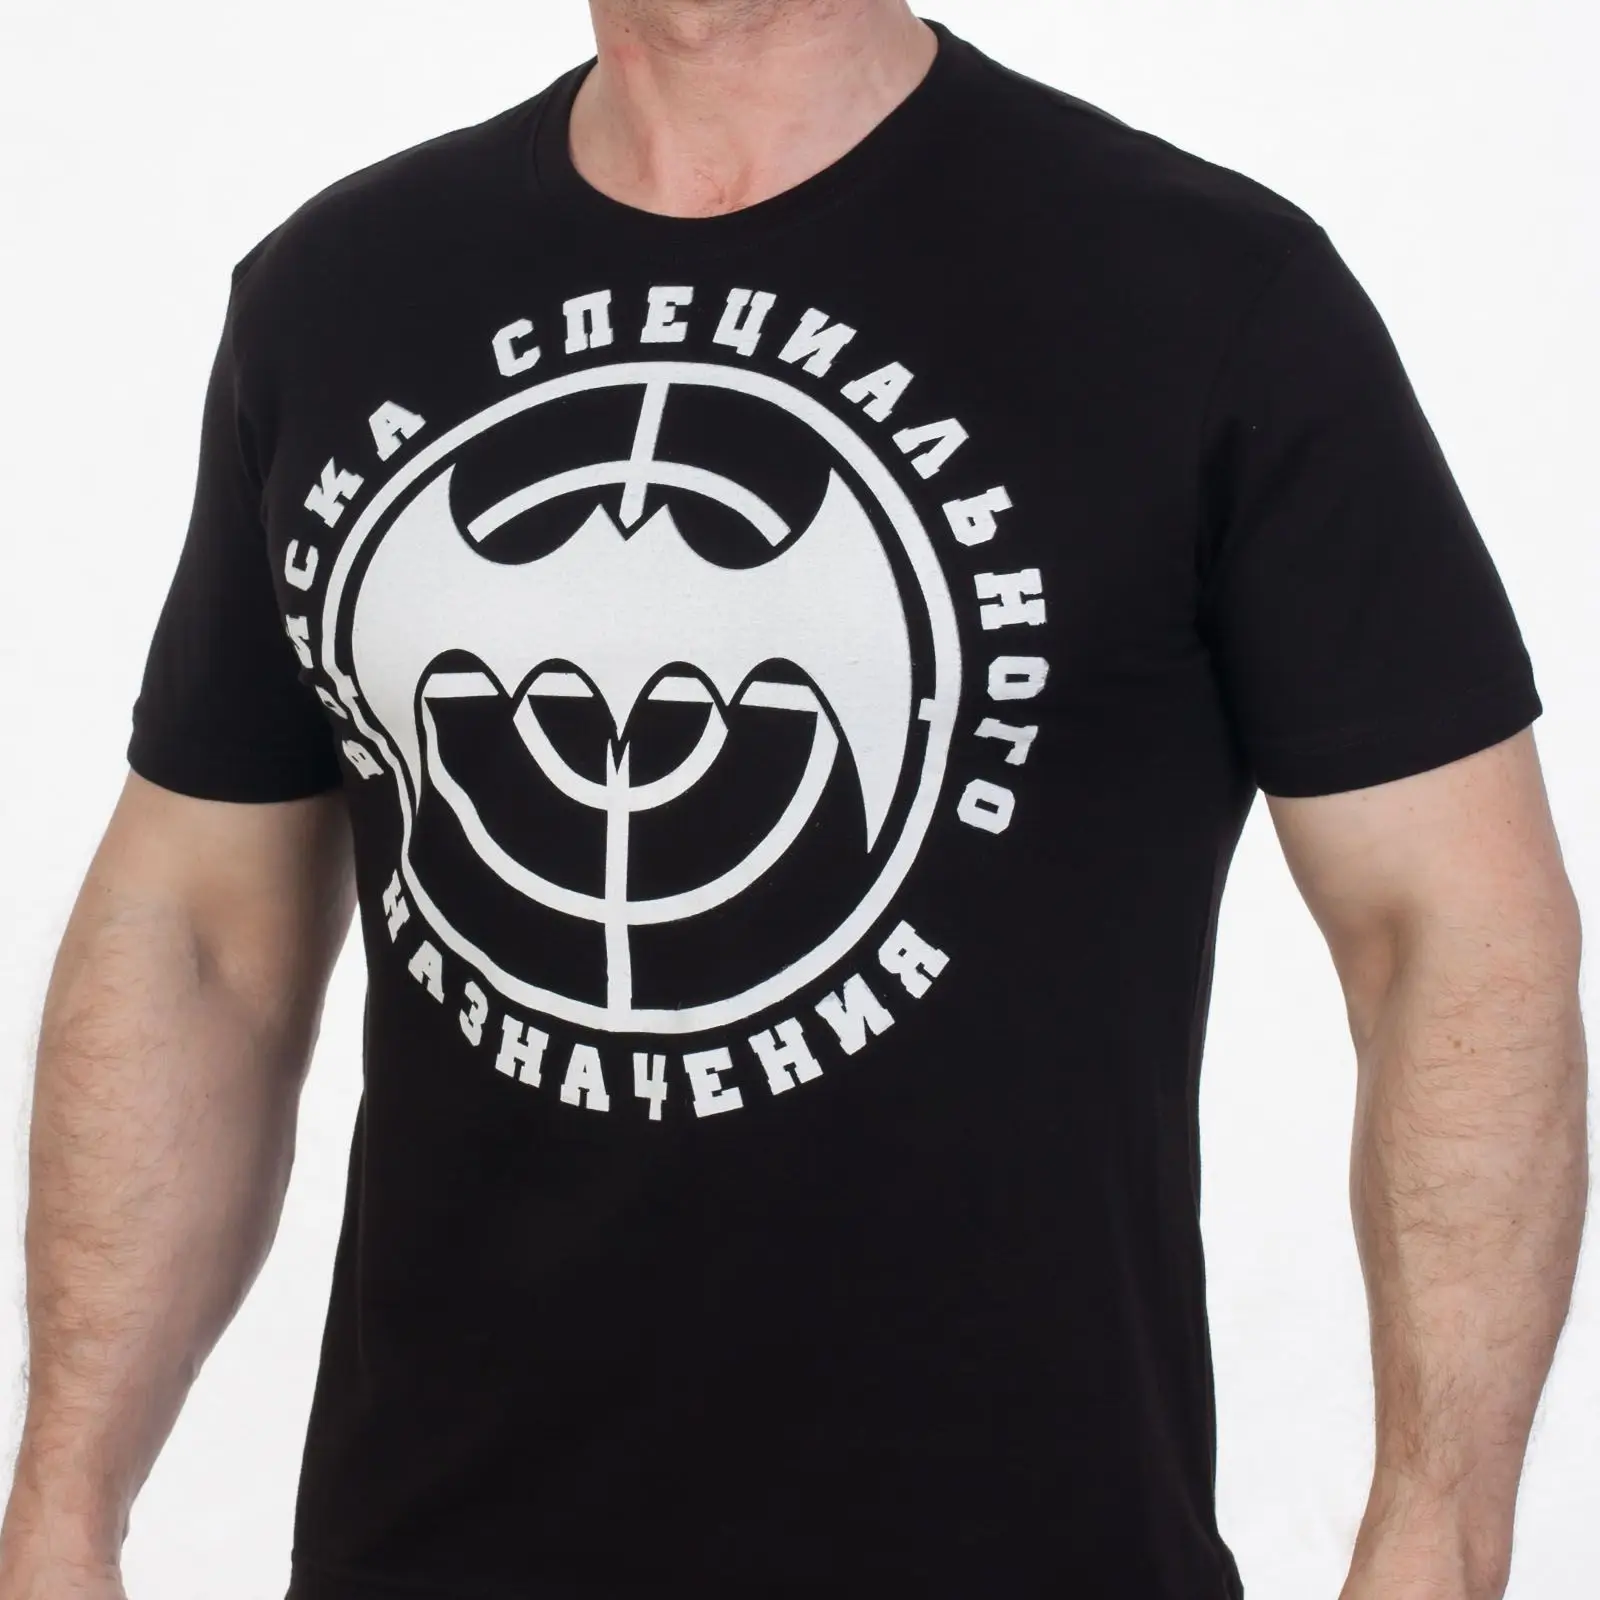 

Russian Military GRU Spetsnaz Specia Force Emblem T-Shirt. Summer Cotton Short Sleeve O-Neck Mens T Shirt New S-3XL